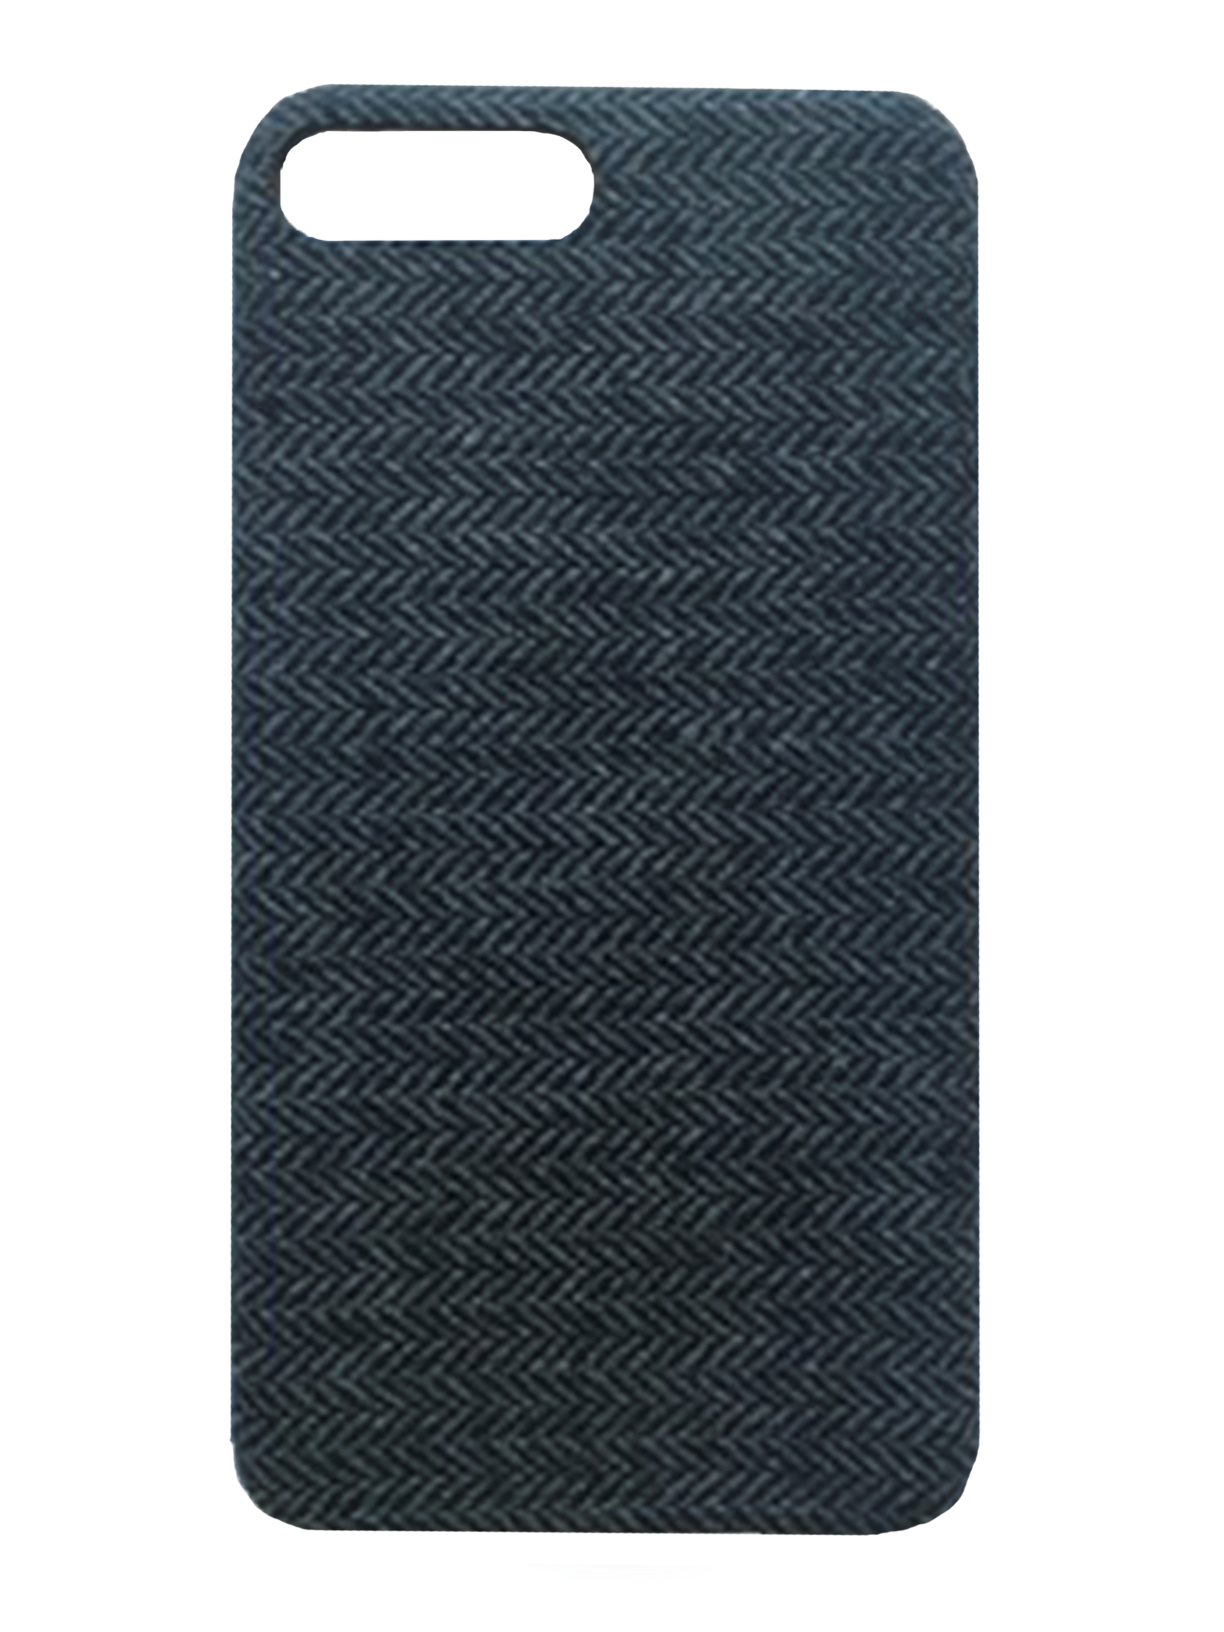 Charcoal Grey Tweed - iPhone 7 Plus / 8 Plus